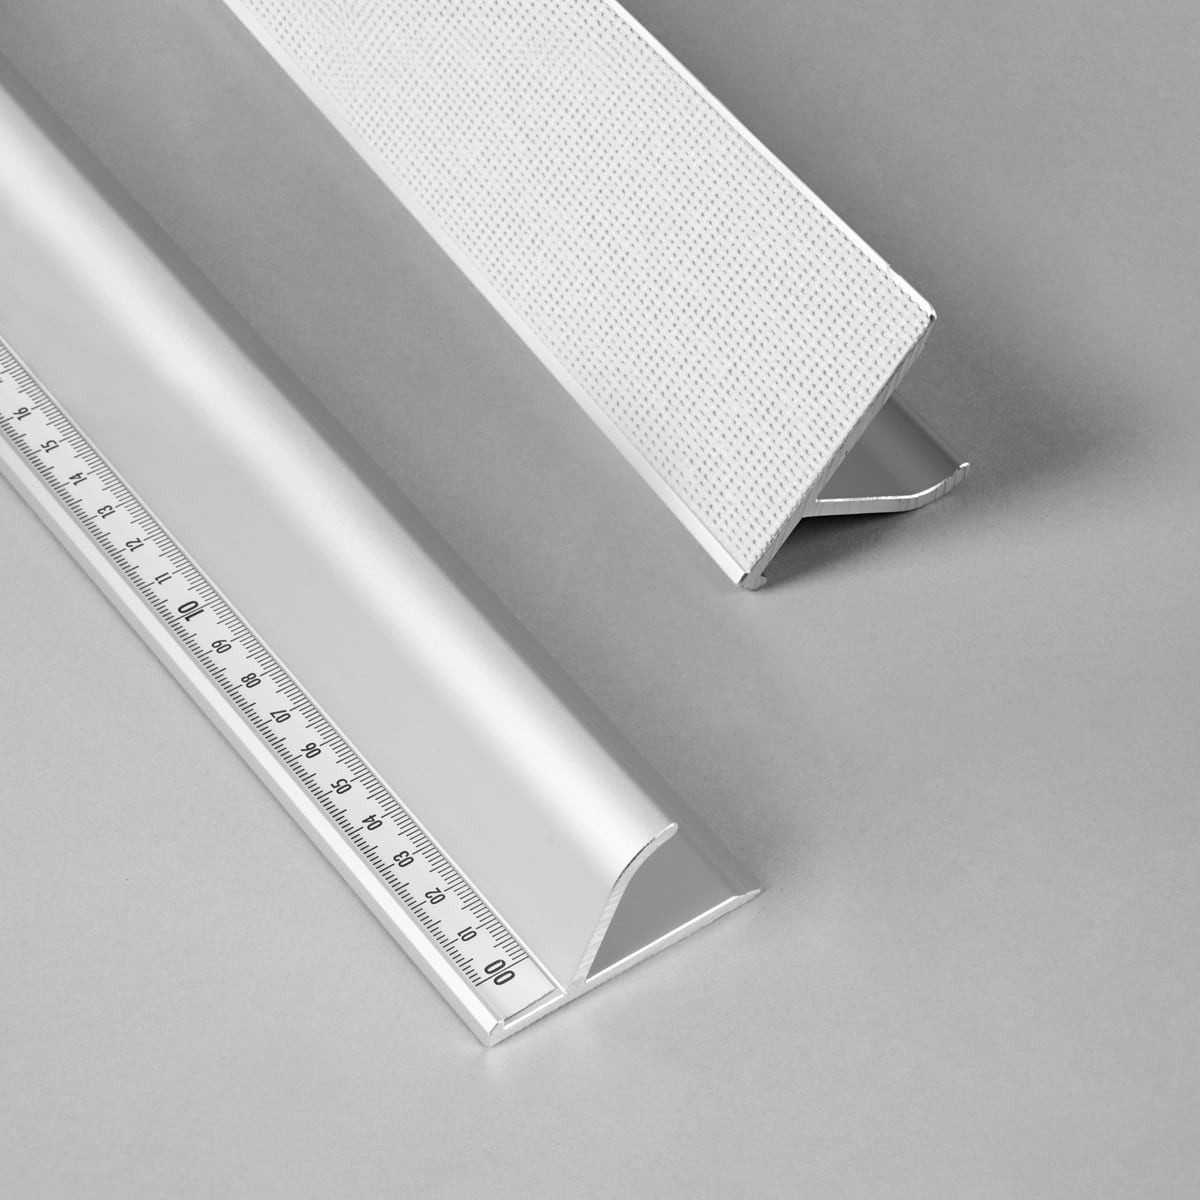 Cutting rulers / aluminum rulers